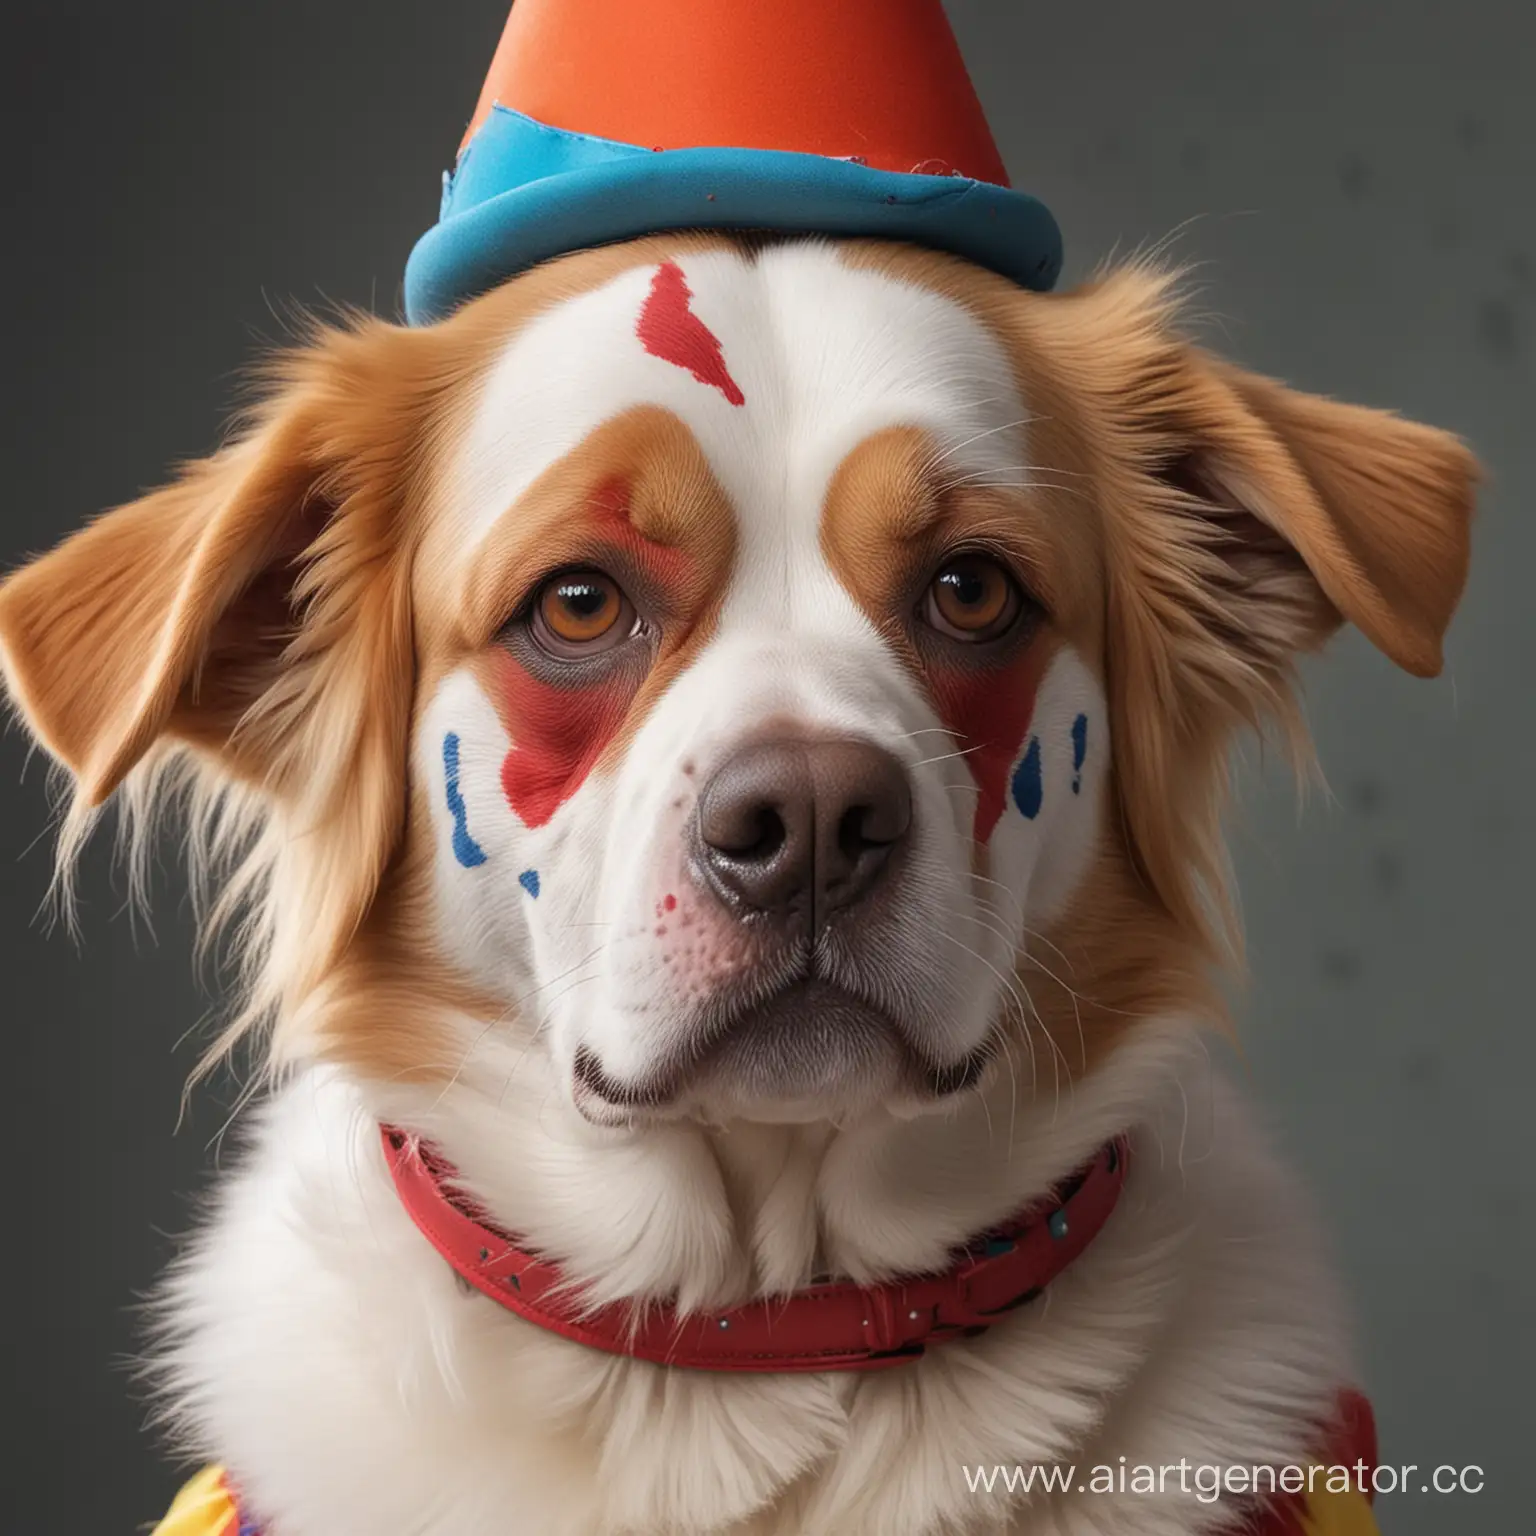 Playful-Dog-with-Clown-Makeup-in-CloseUp-Shot